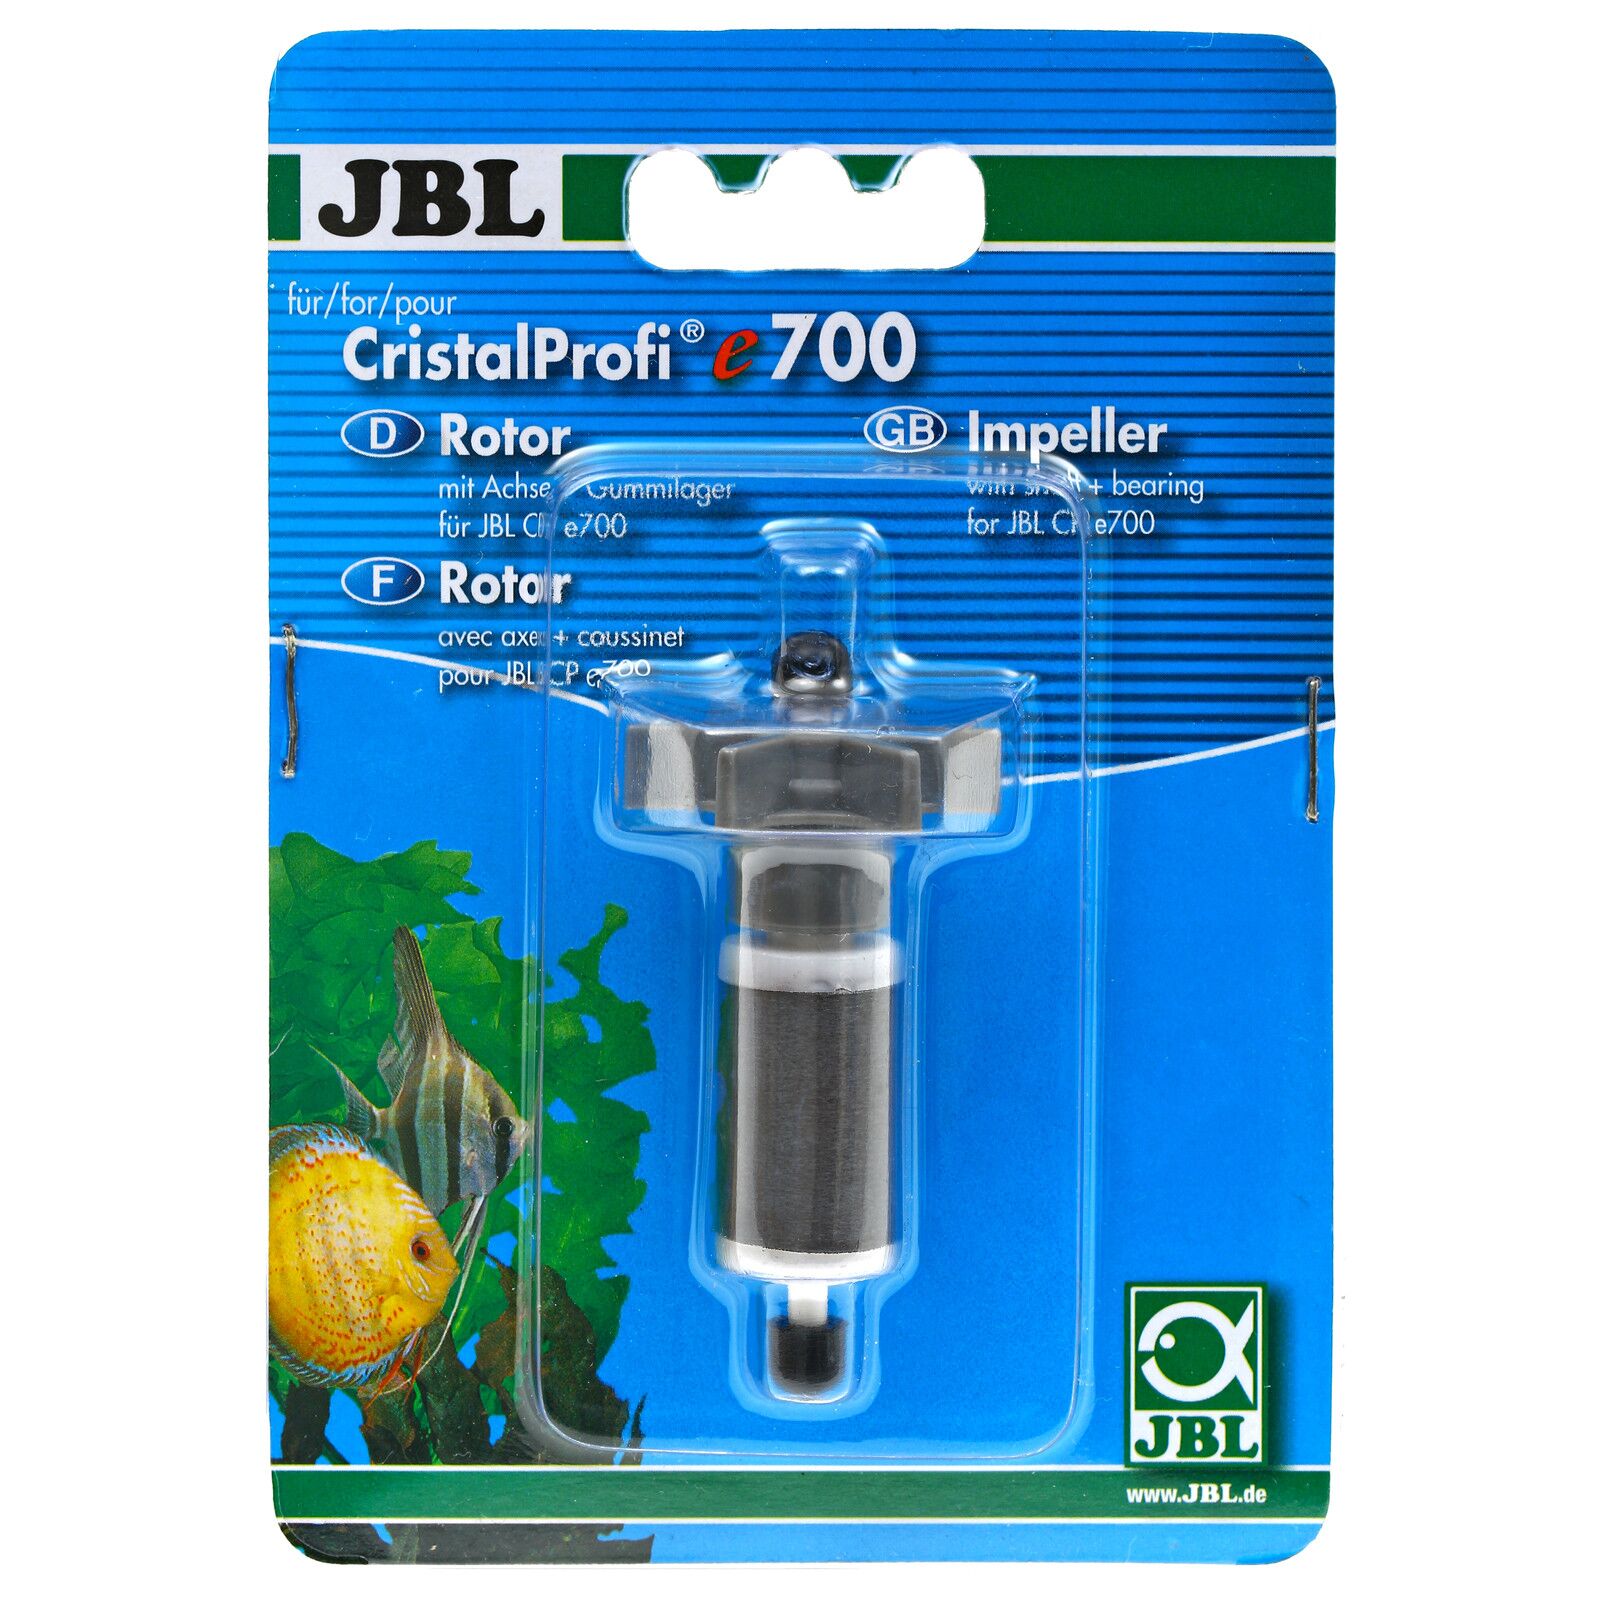 JBL - CristalProfi - Impeller Set